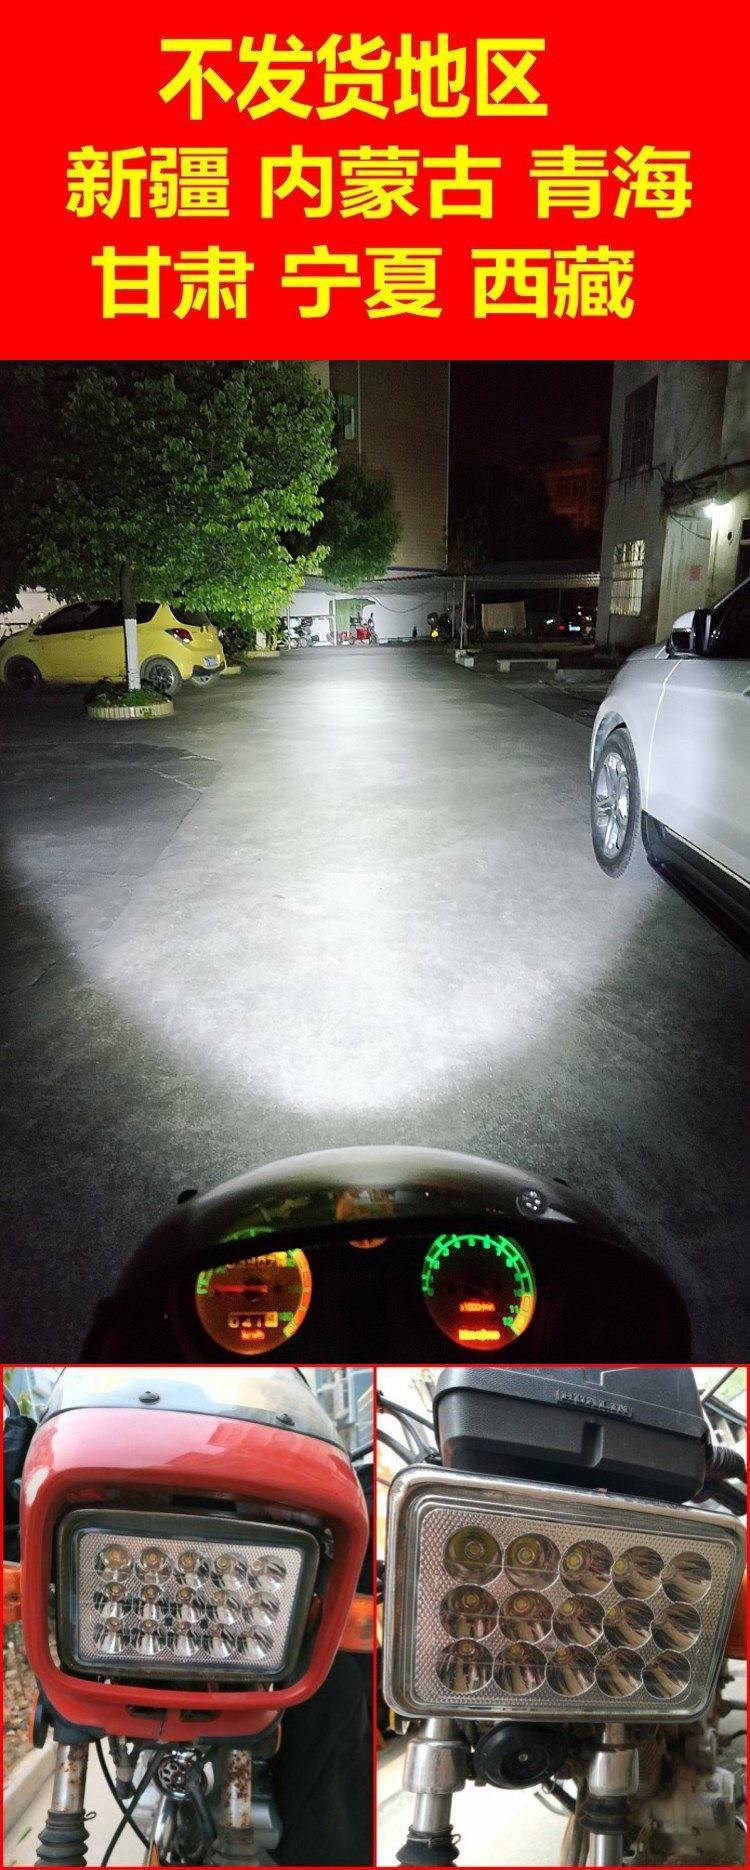 125 Phụ kiện xe máy Đèn pha LED Daquan Suzuki Siêu sáng Ánh sáng mạnh Đèn chiếu sáng xa và gần Bình tụ ánh sáng đầu tròn Đèn ô tô Chung - Đèn xe máy